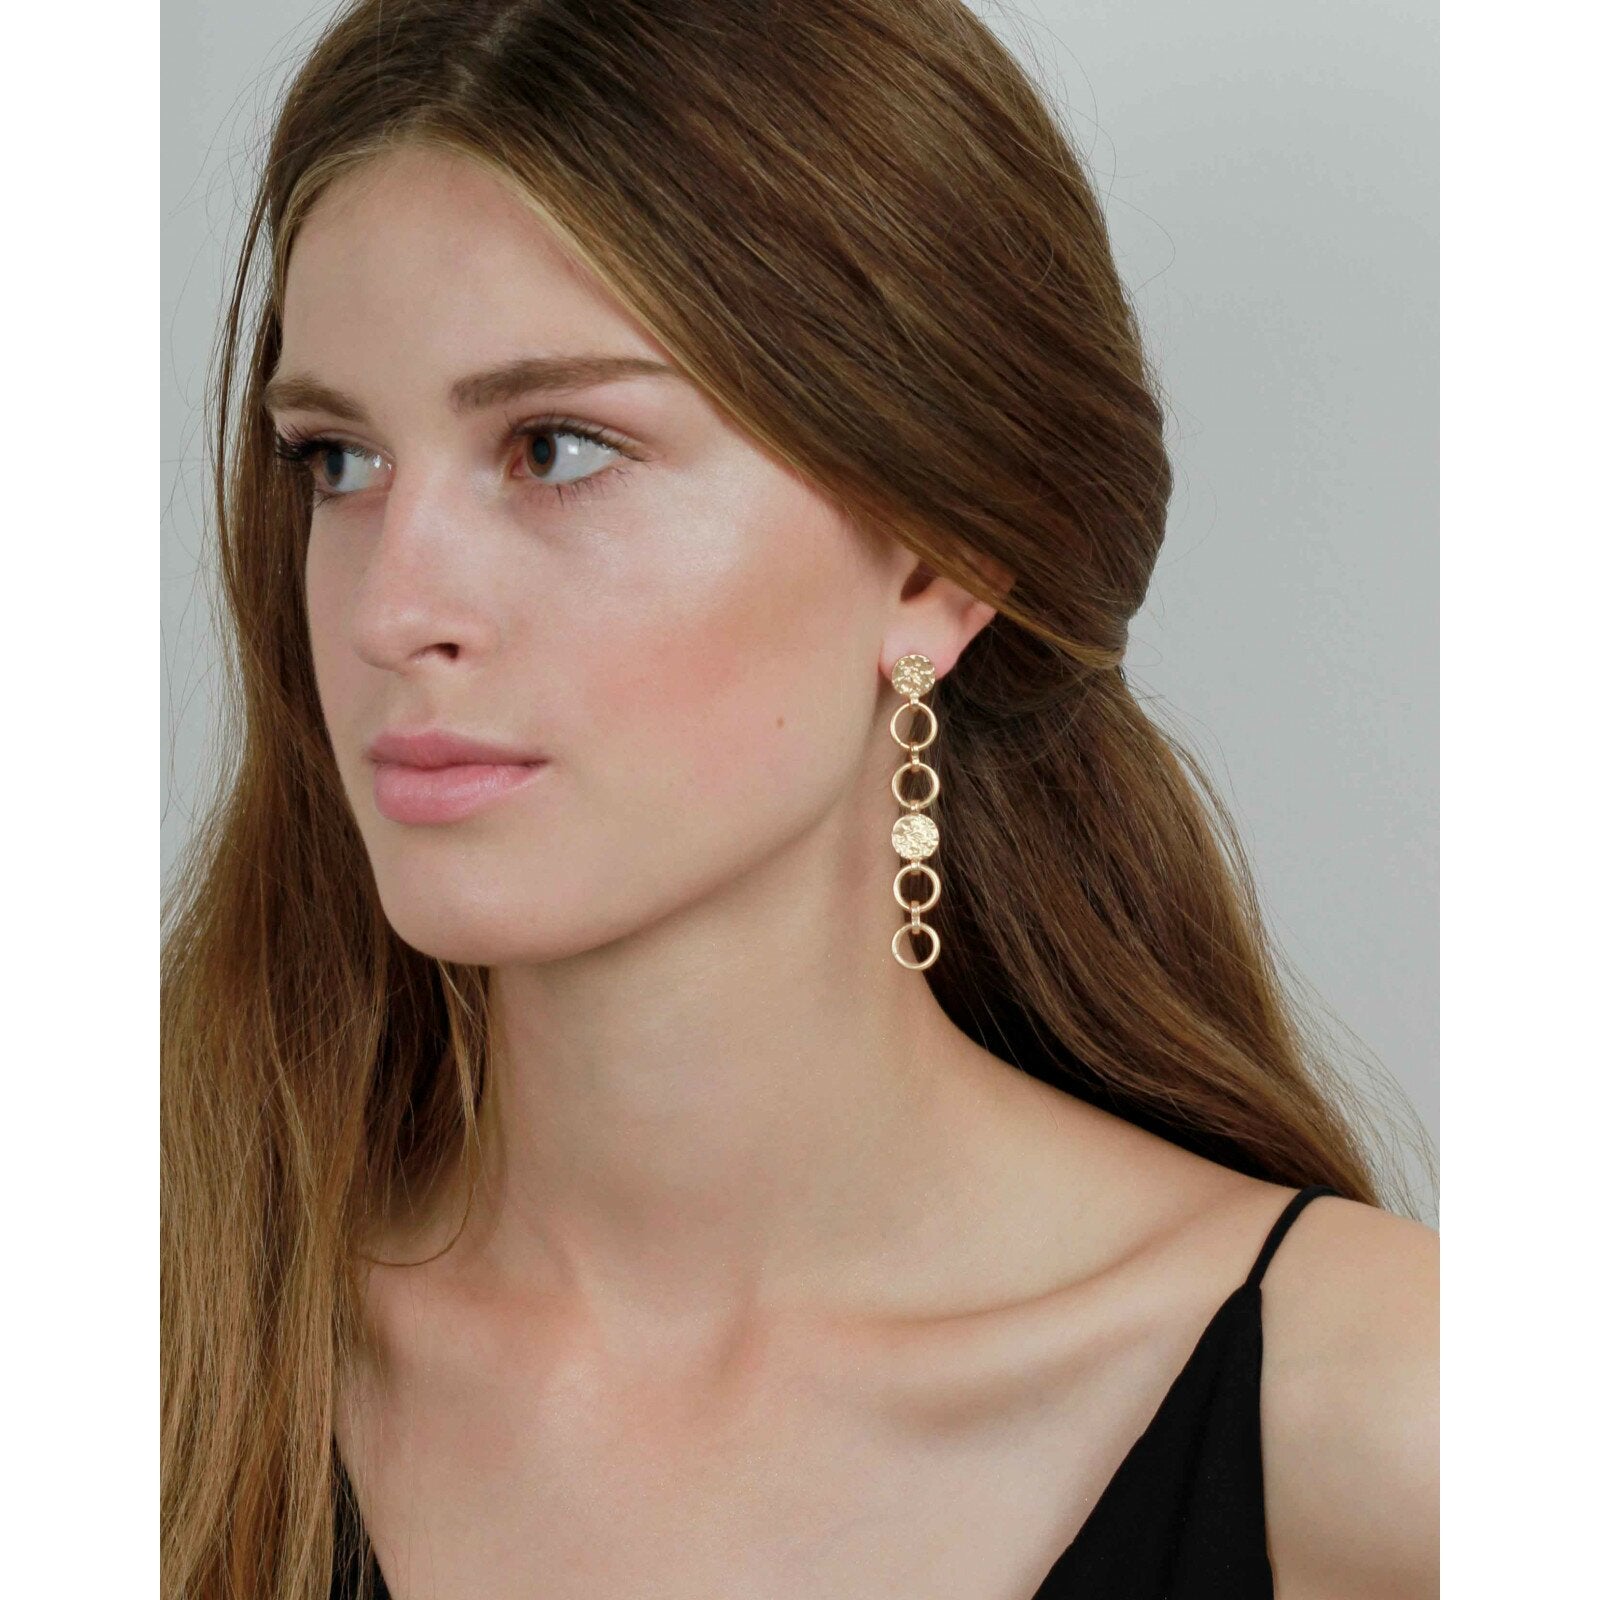 Drop Rainbow Silver Plated Earrings - Maya Maya Ltd